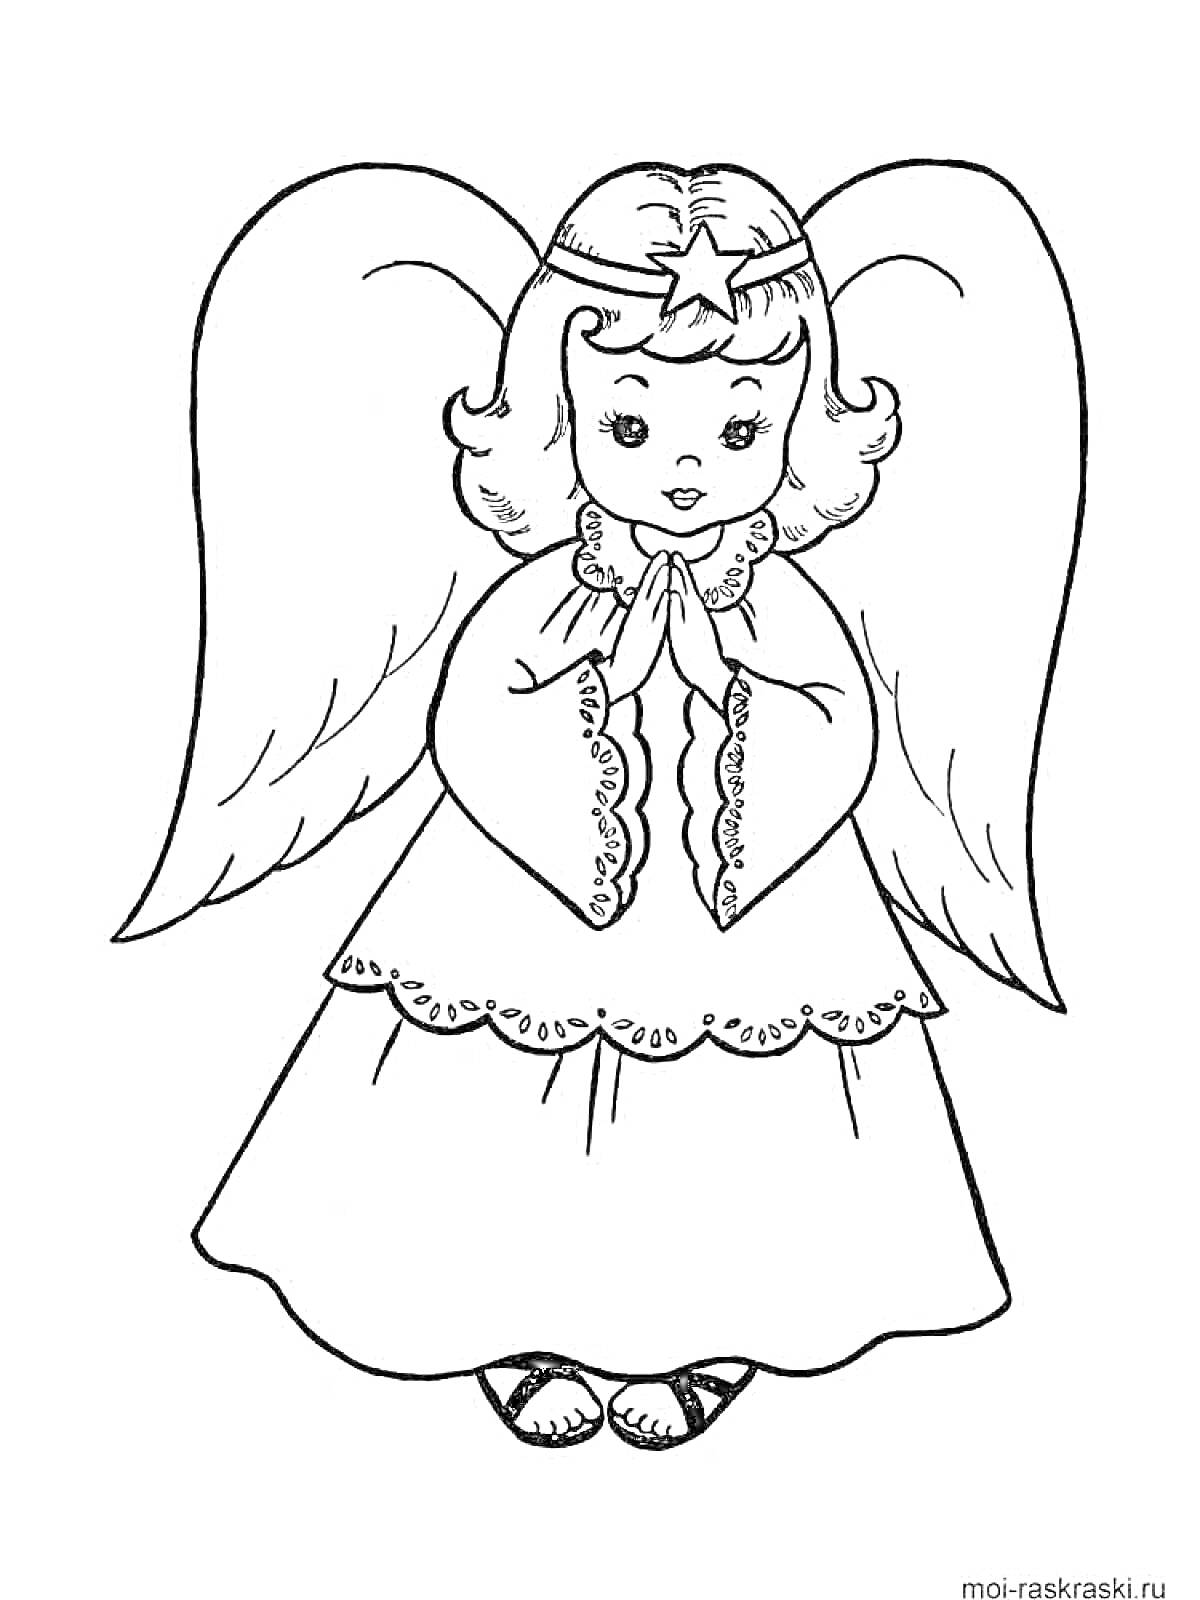 Раскраска Ангел с крыльями, с звёздочкой на голове и сложенными руками в молитве